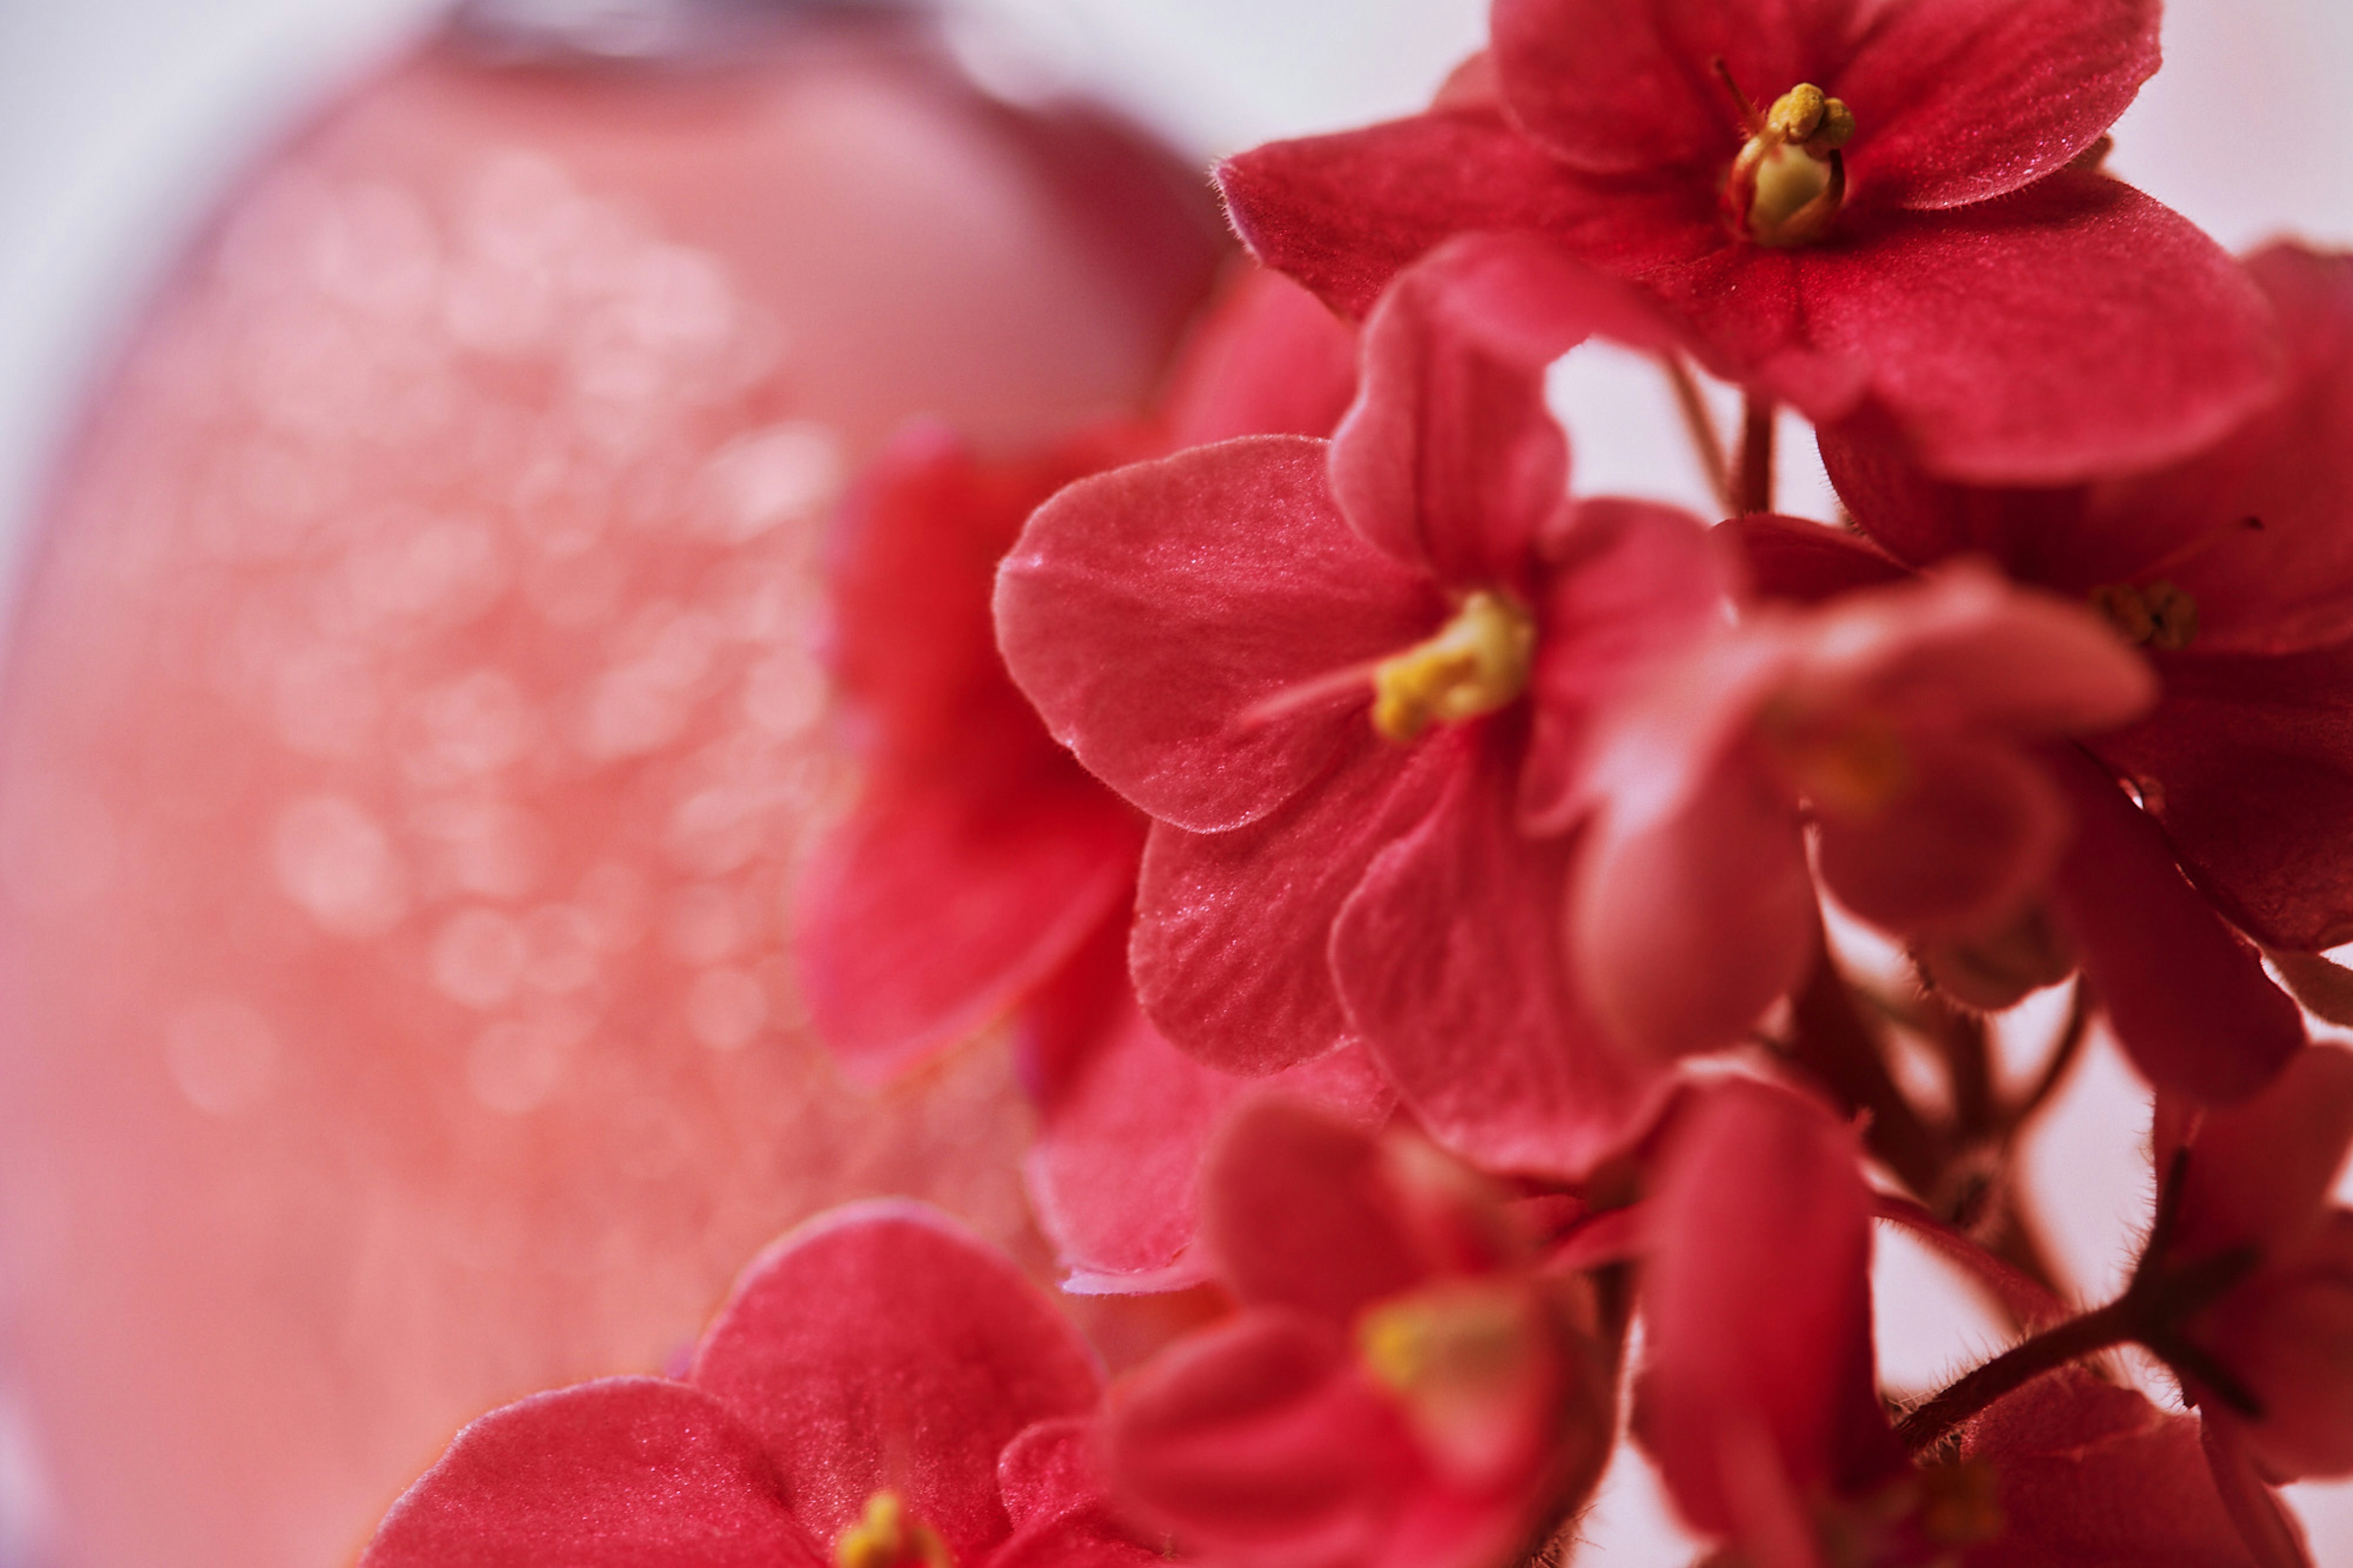 
Flores vermelhas na frente de um frasco de perfume.